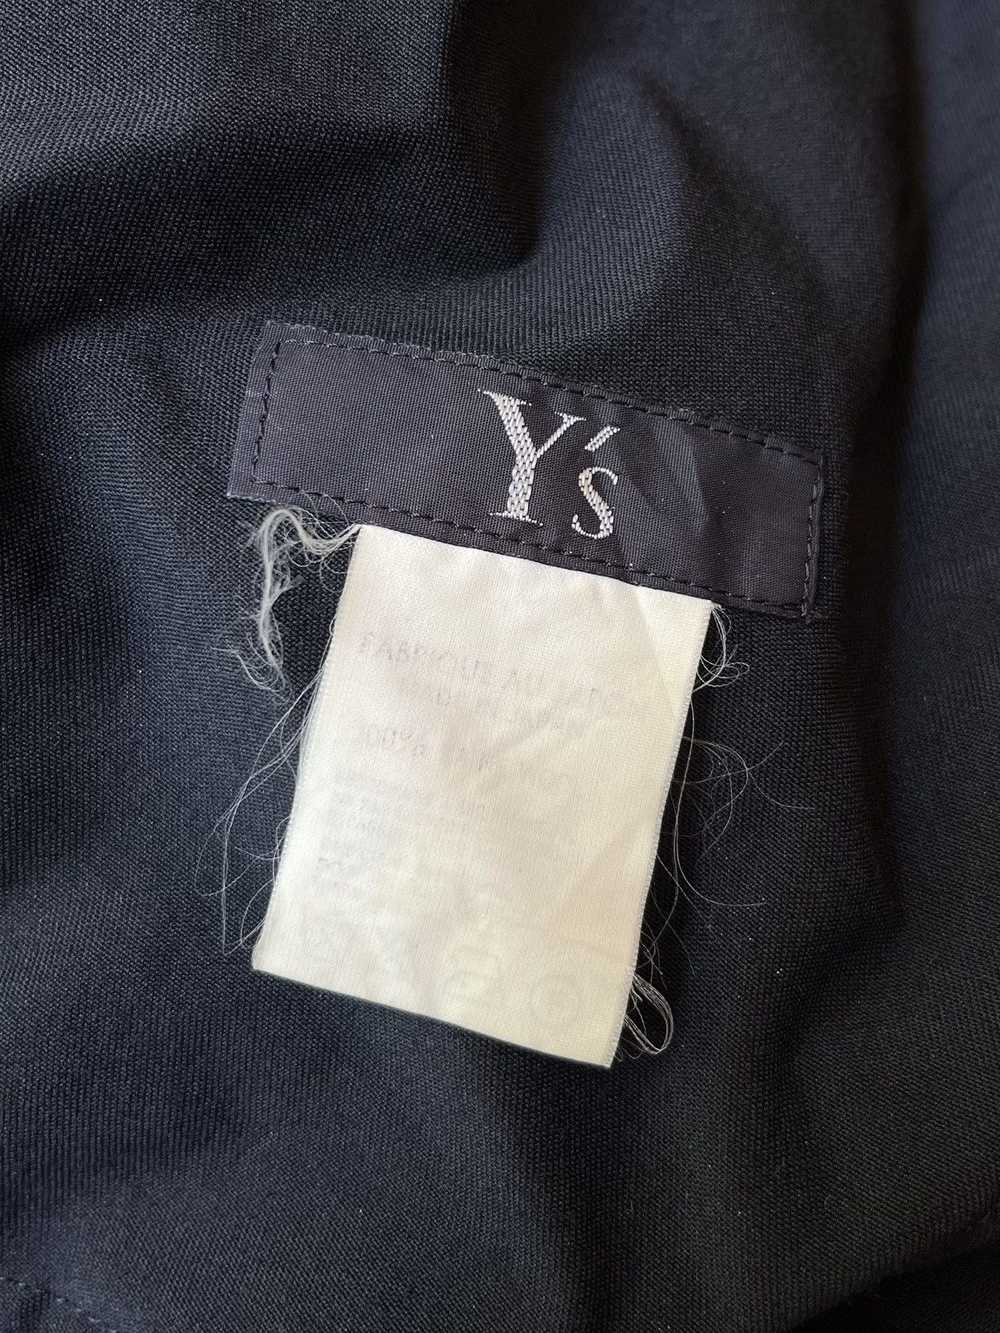 Y's × Yohji Yamamoto × Ys (Yamamoto) Yohji Yamamo… - image 9